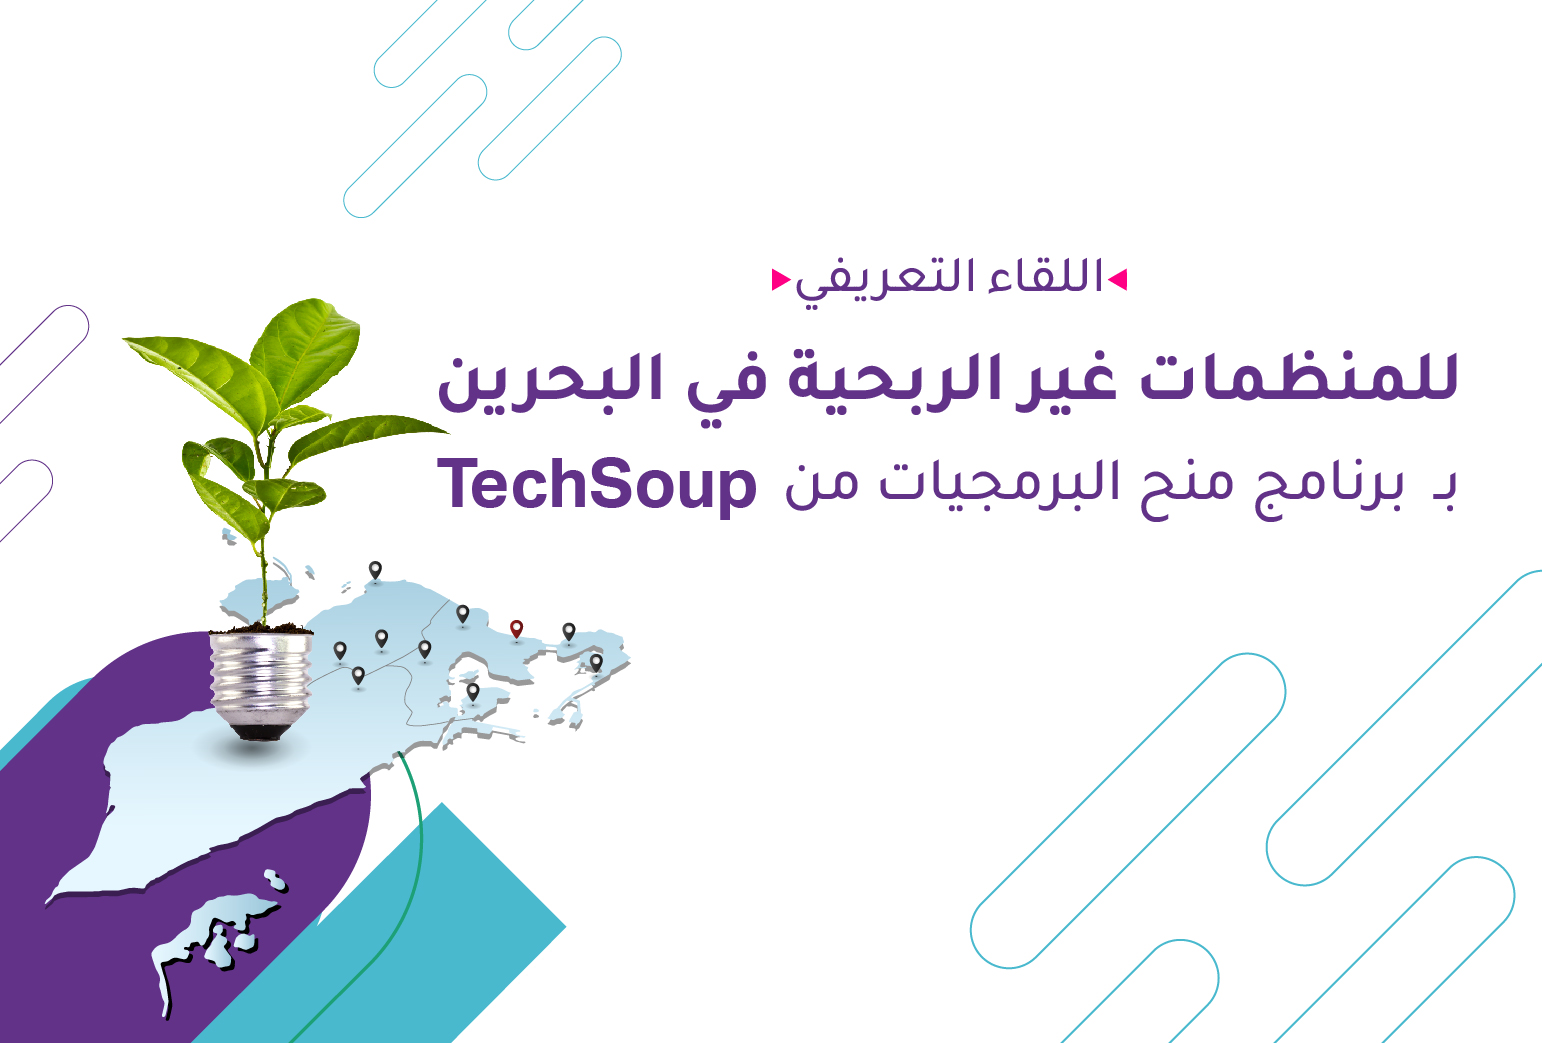 اللقاء التعريفي لمنظمات البحرين  بـ برنامج منح البرمجيات من  TechSoup